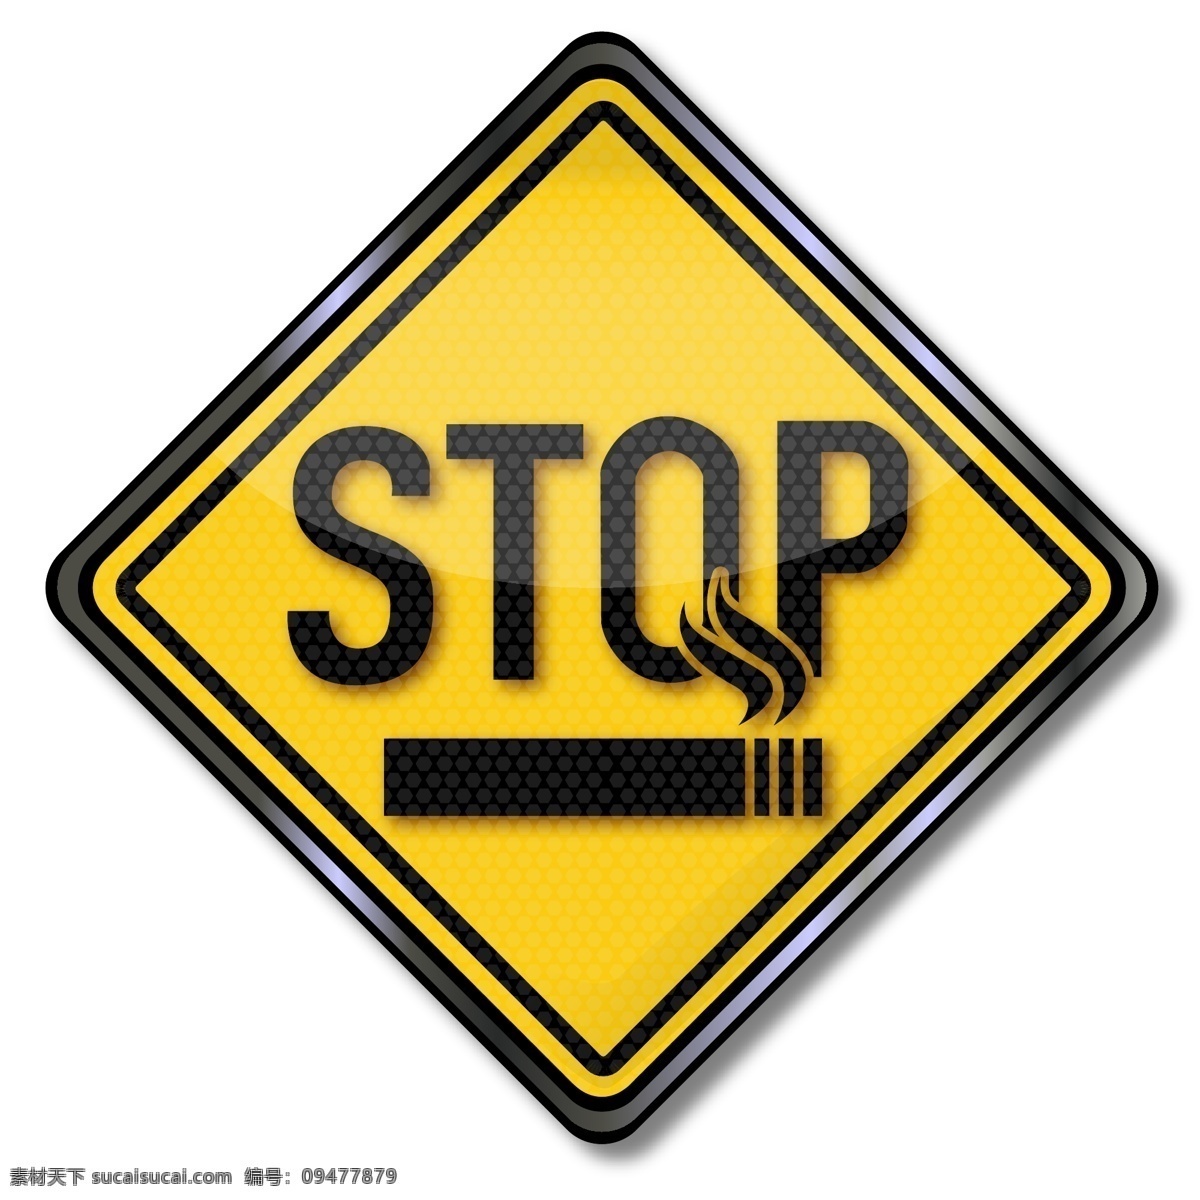 禁止吸烟标志 香烟 燃烧 禁烟 禁止 手绘 矢量 图标 标志 标签 logo 小图标 标识标志图标